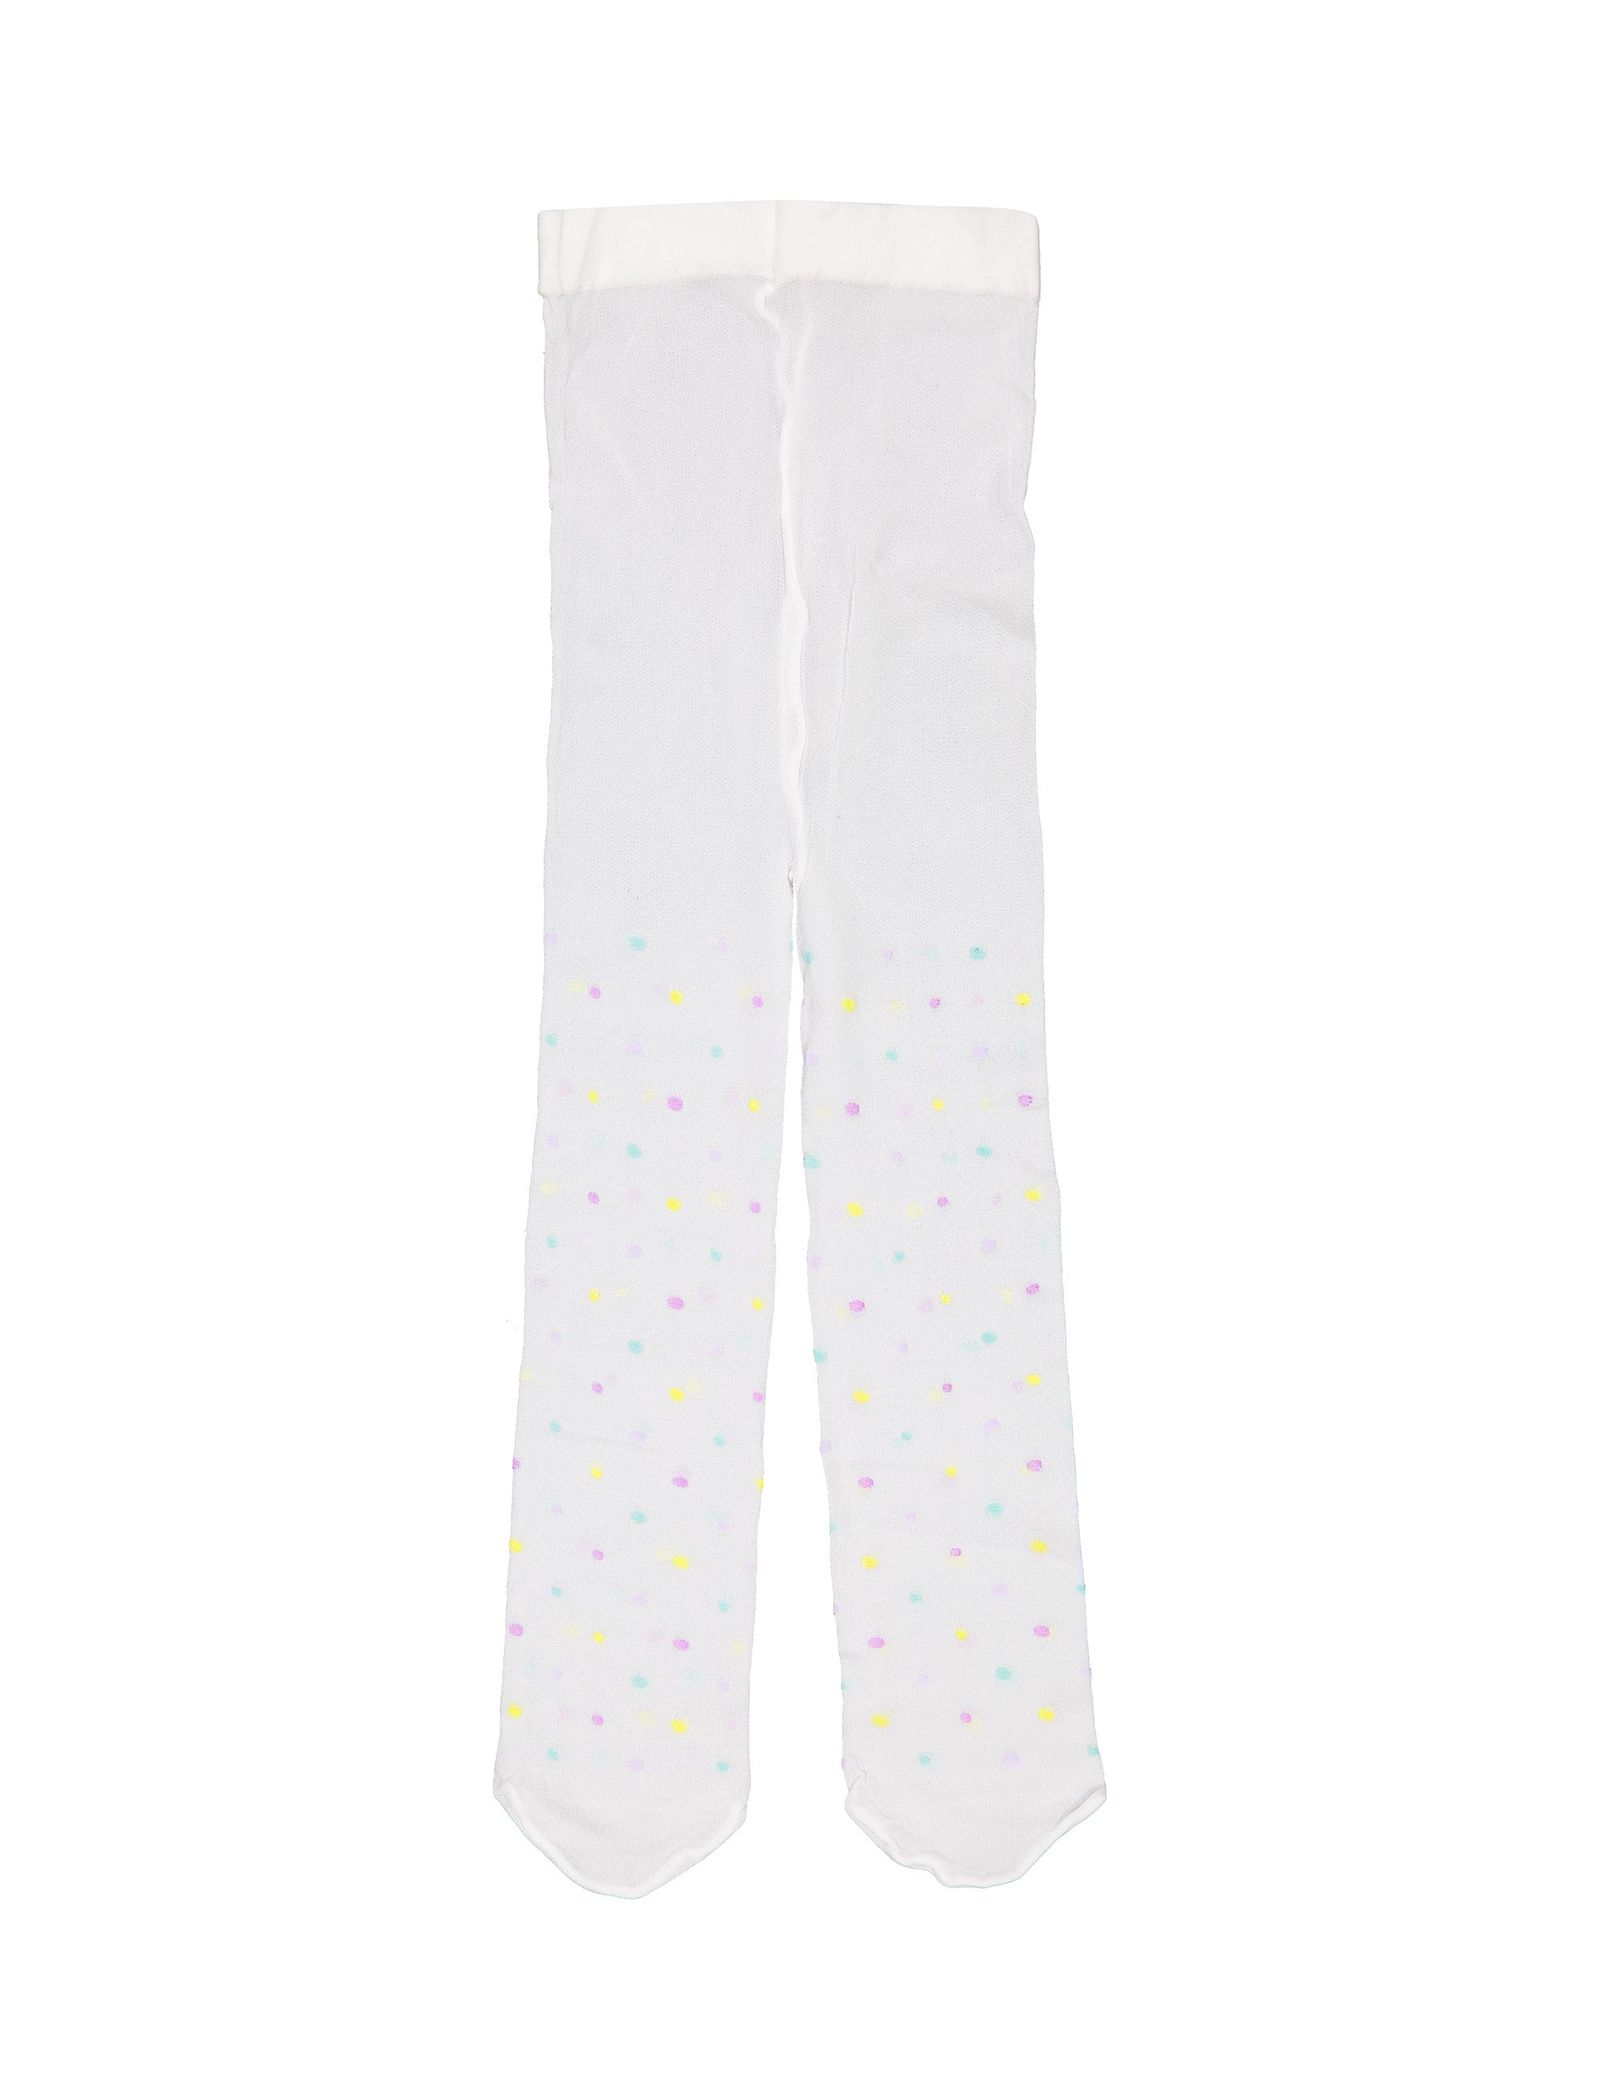 جوراب شلواری طرح دار نوزادی دخترانه - ایدکس - سفيد - 1